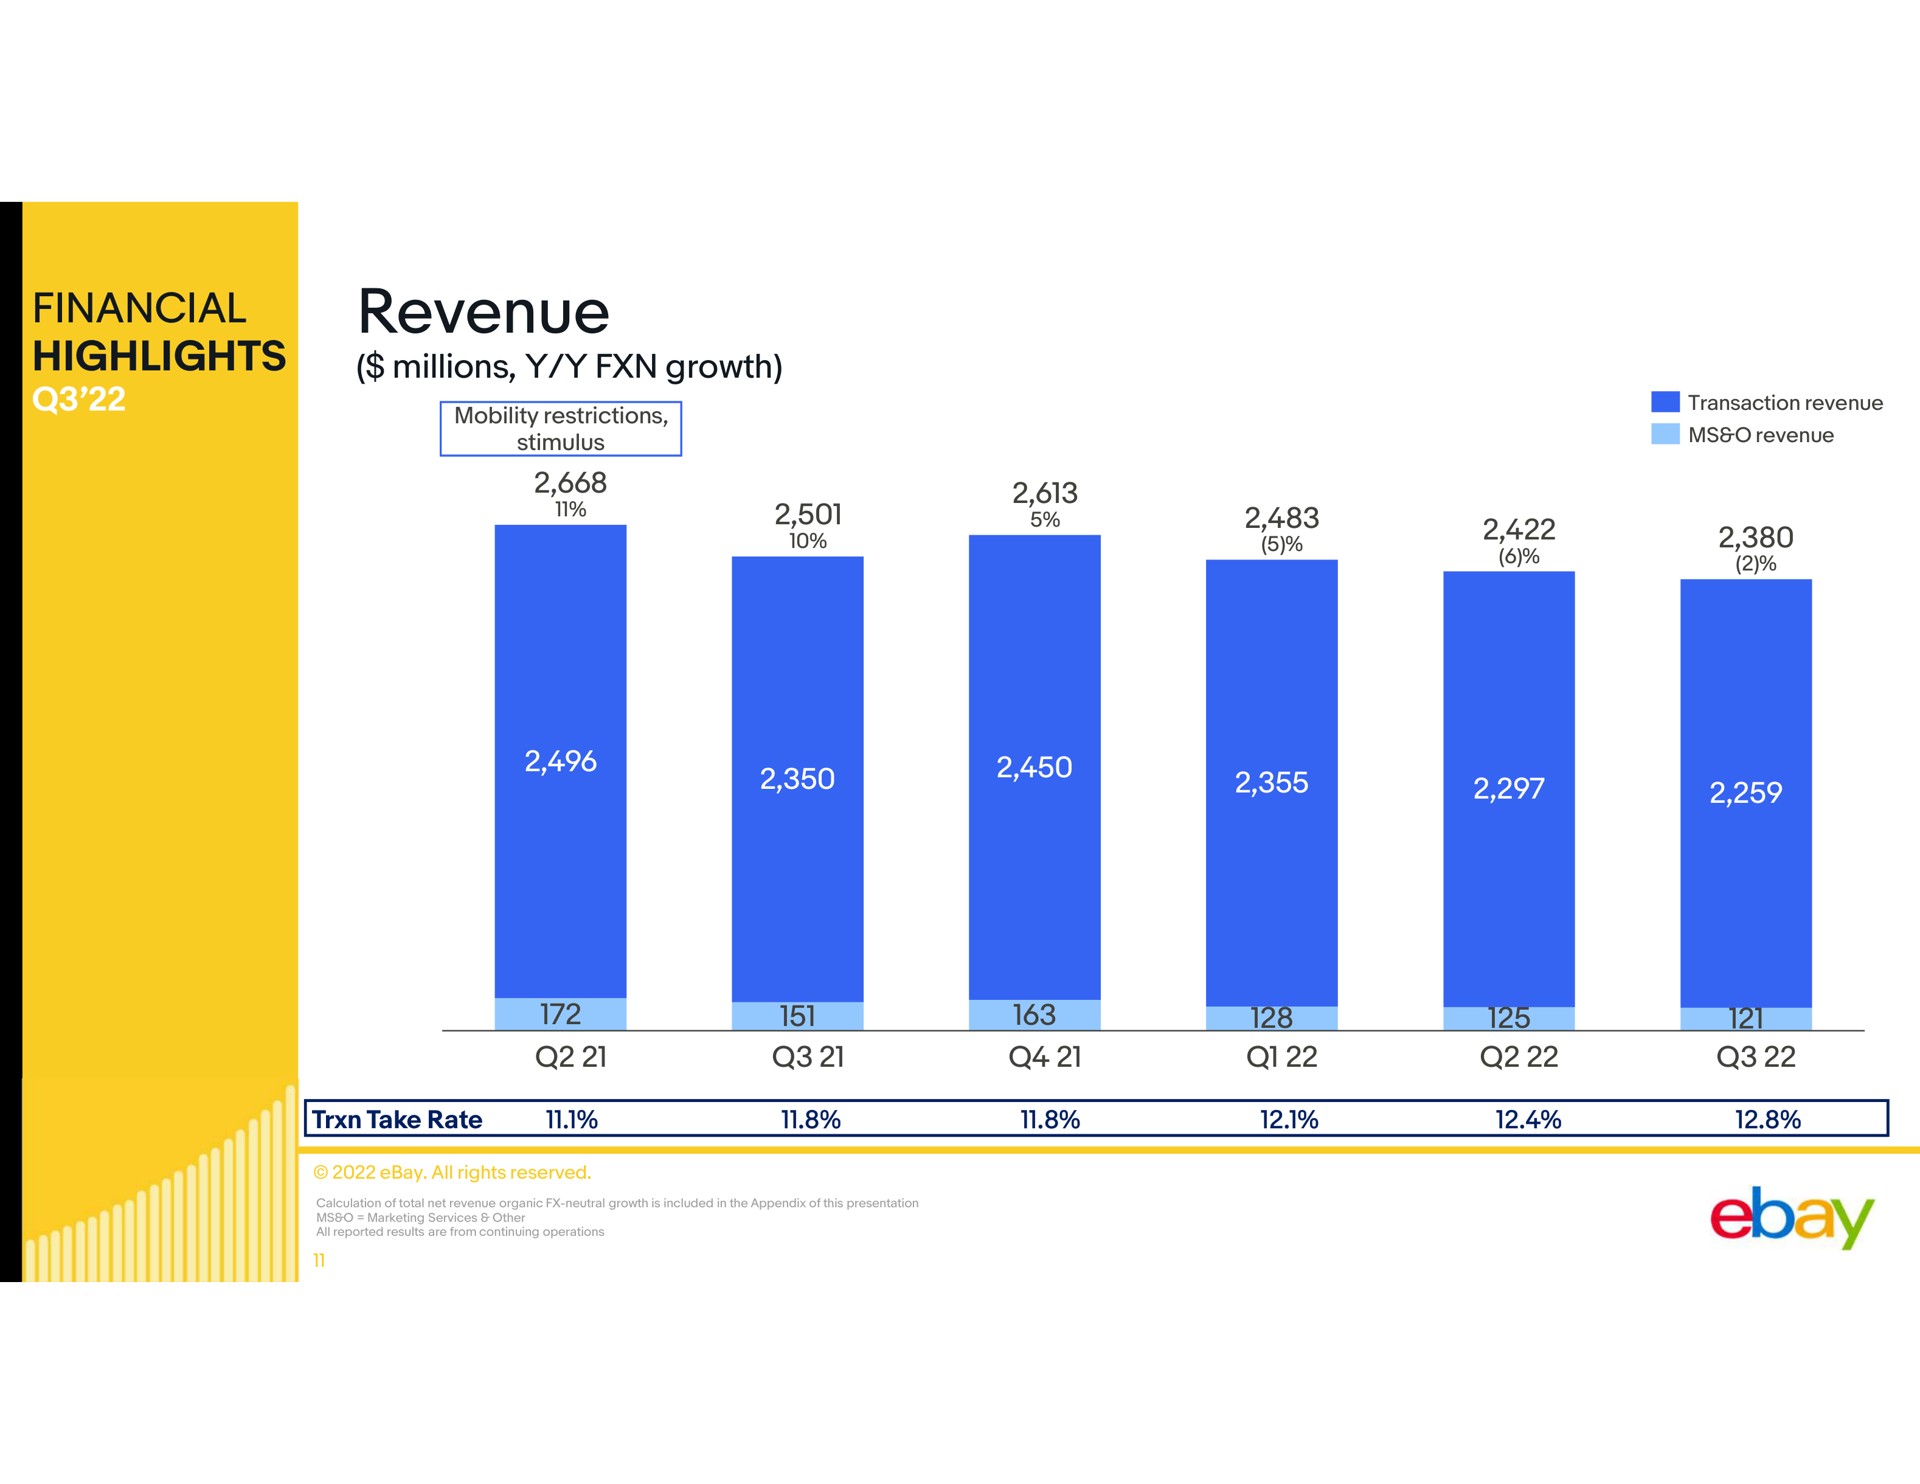 financial highlights revenue | eBay